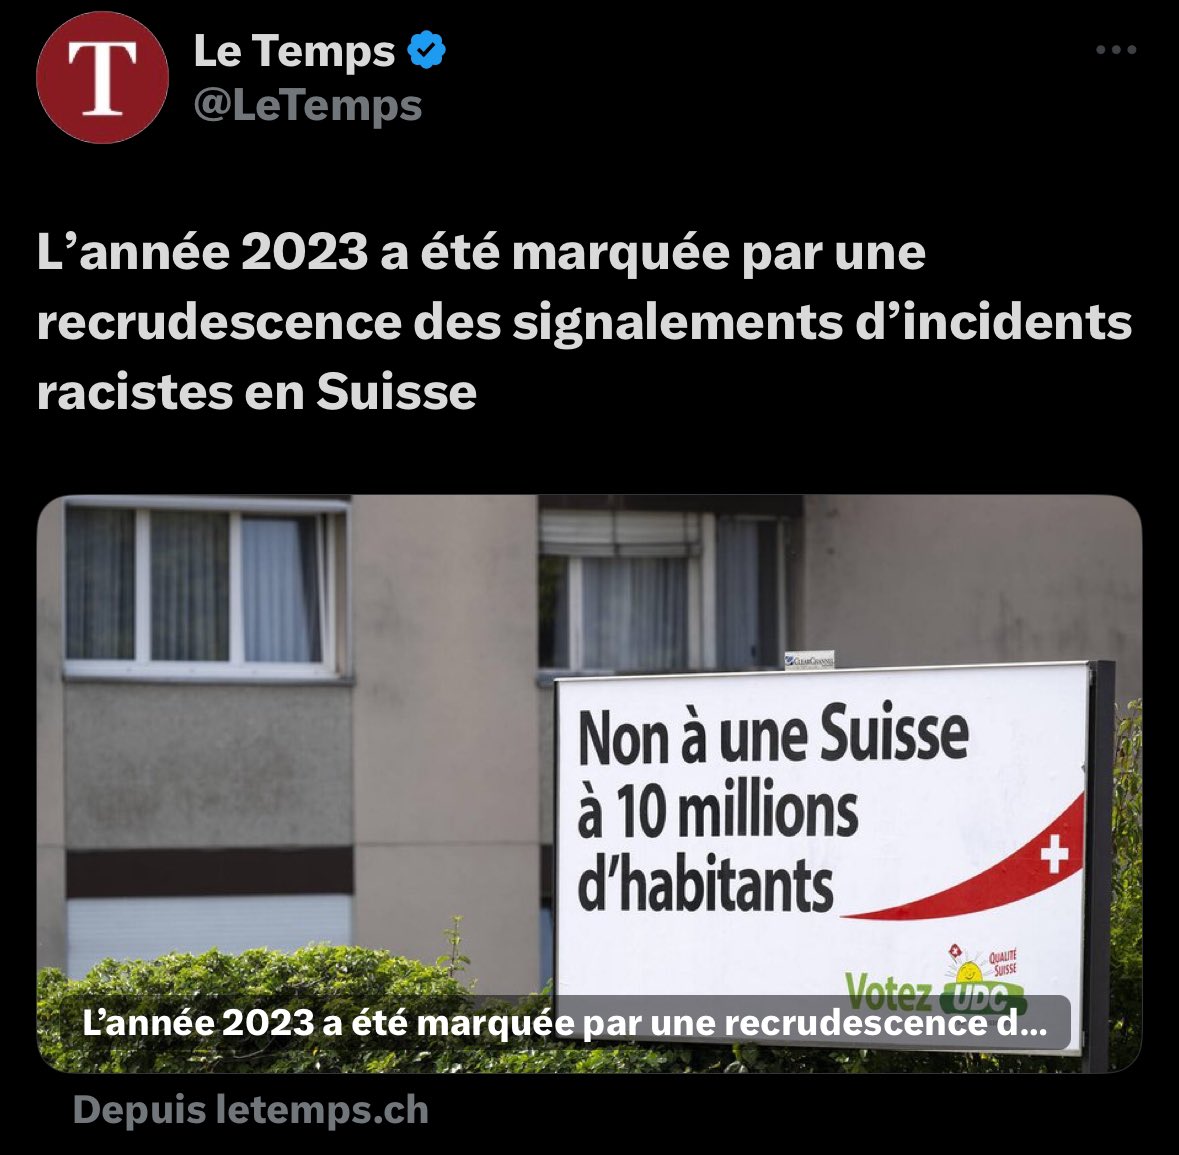 Pourquoi @LeTemps met-il une image d'illustration sur l'affiche concernant l'initiative sur la durabilité de l'@UDCch en la reliant à des signalements d'incidents racistes en #Suisse ? Vous sous-entendez donc indirectement que l'#UDC est raciste ? C'est totalement inadmissible !